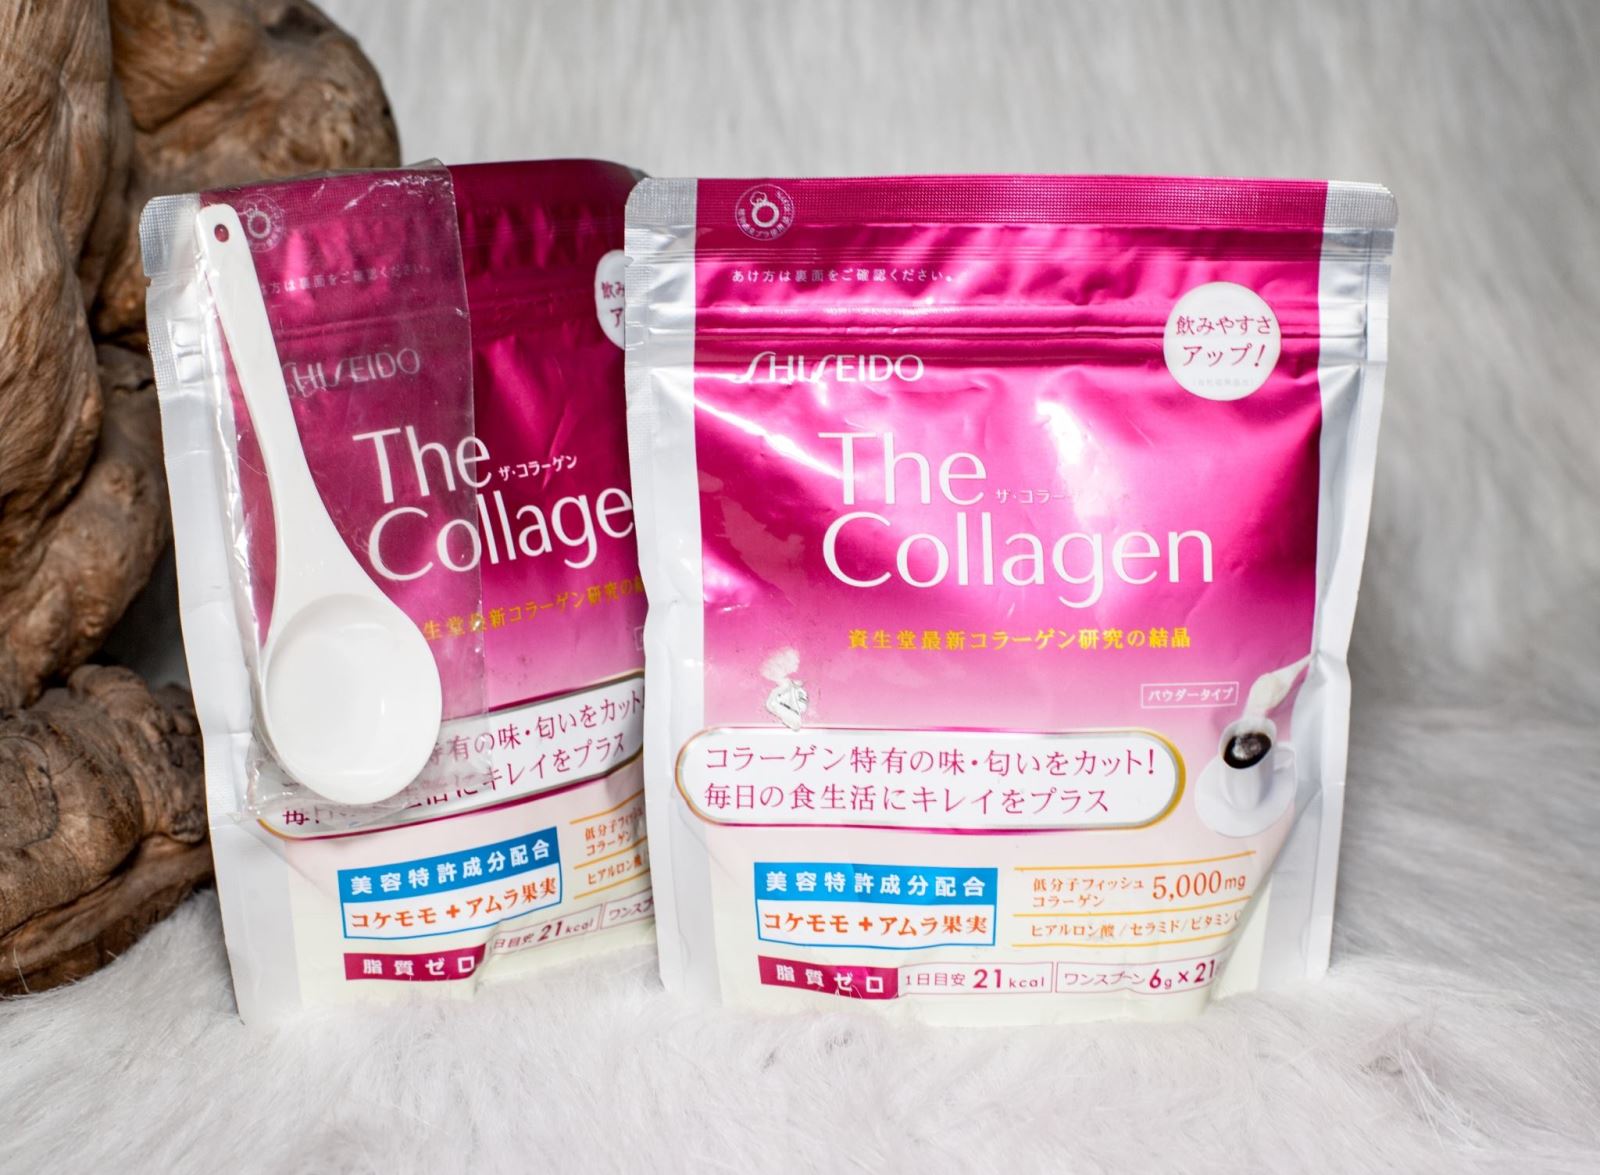 Collagen Shiseido Dạng Bột Review Phản Hồi Từ Người Dùng